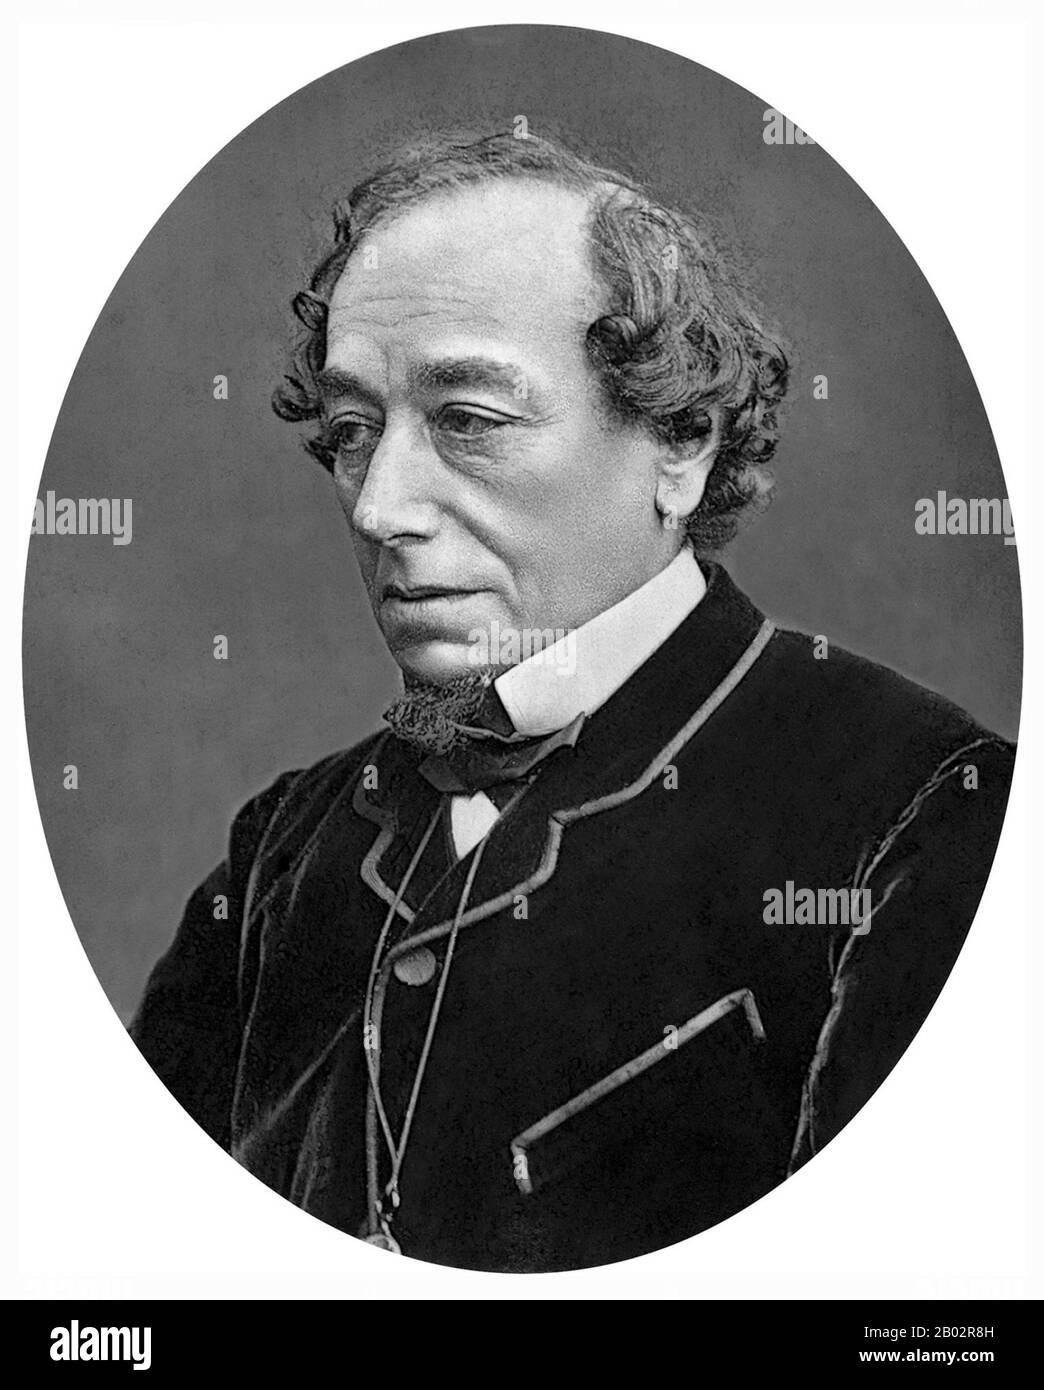 Benjamin Disraeli, primer conde de Beaconsfield, KG, PC, FRS, (21 de diciembre de 1804 – 19 de abril de 1881) fue un político, escritor y aristócrata conservador británico que sirvió dos veces como primer ministro. Desempeñó un papel central en la creación del Partido Conservador moderno, definiendo sus políticas y su amplio alcance. Disraeli es recordado por su influyente voz en los asuntos mundiales, sus batallas políticas con el líder liberal William Ewart Gladstone, y su conservadurismo de una nación o "democracia Tory". Hizo de los conservadores el partido más identificado con la gloria y el poder del embir británico Foto de stock